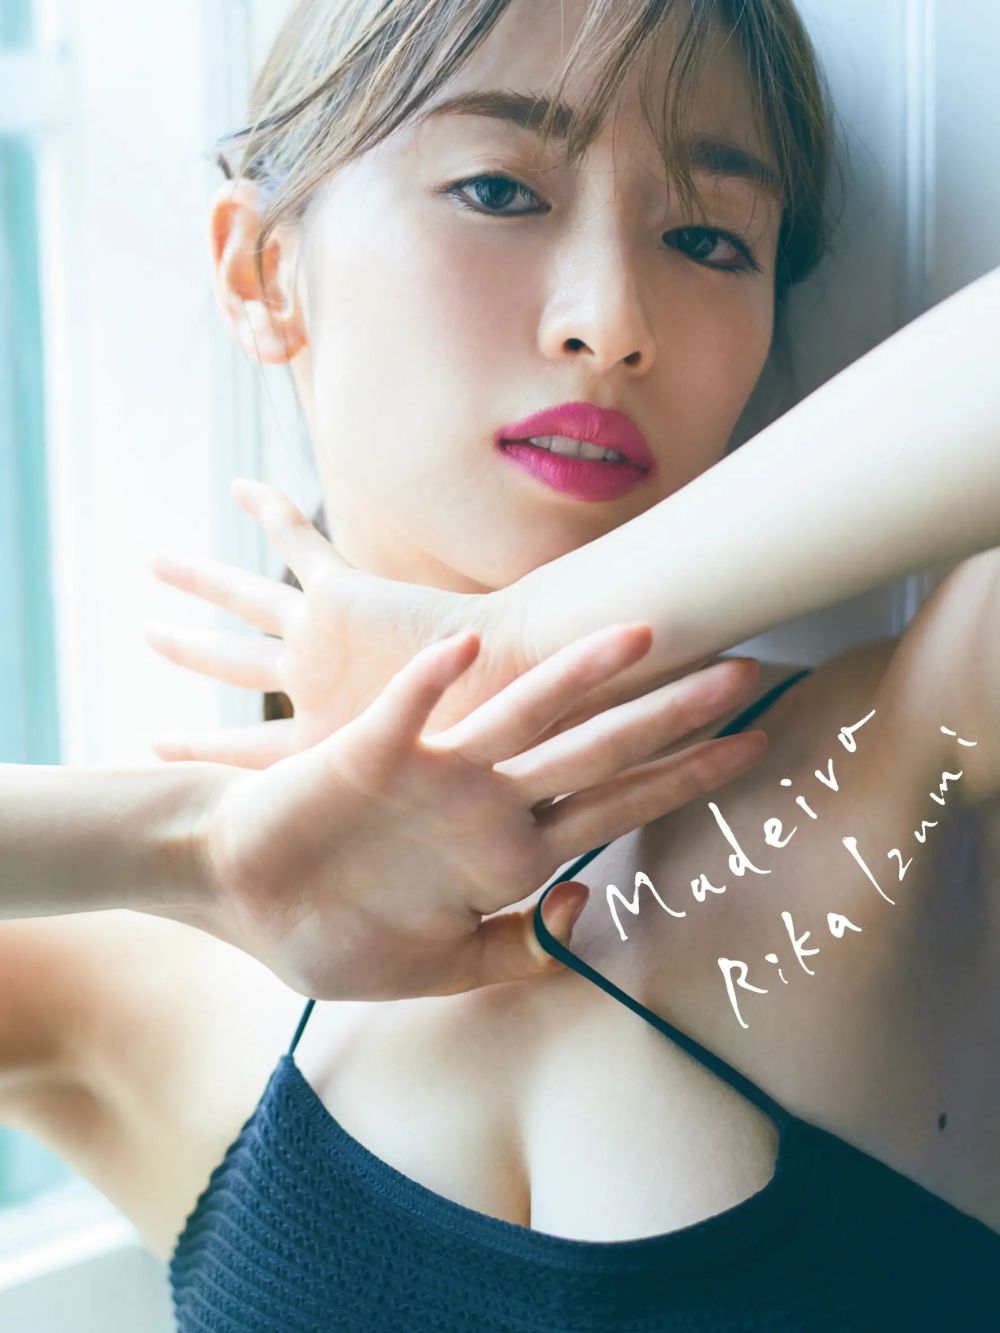 Rika Izumi Sexy and Hottest Photos , Latest Pics